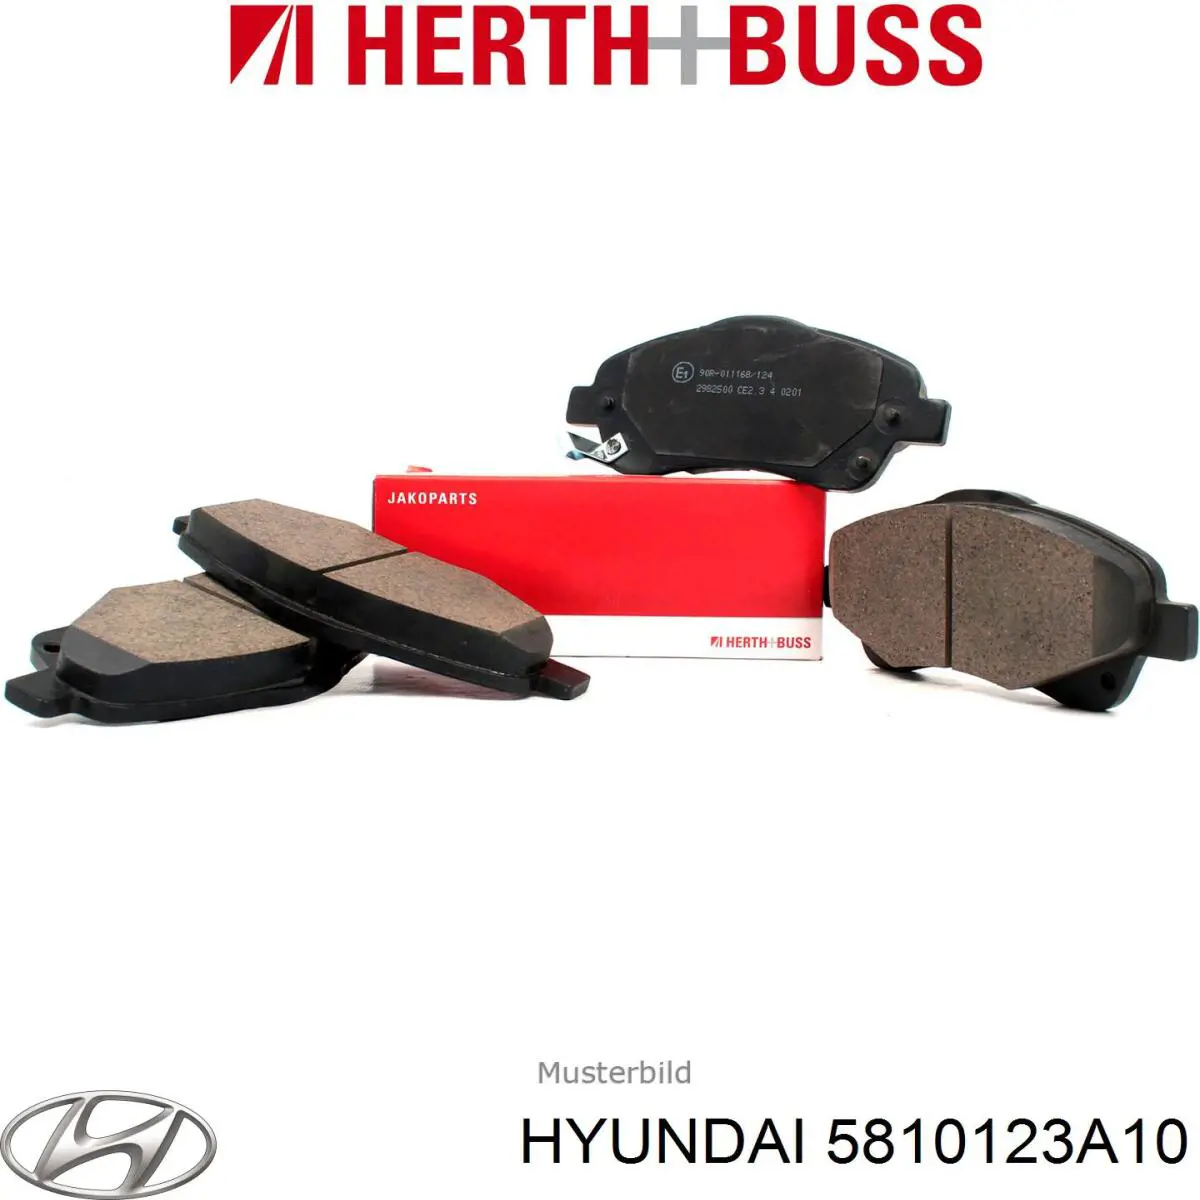 5810123A10 Hyundai/Kia pastillas de freno delanteras